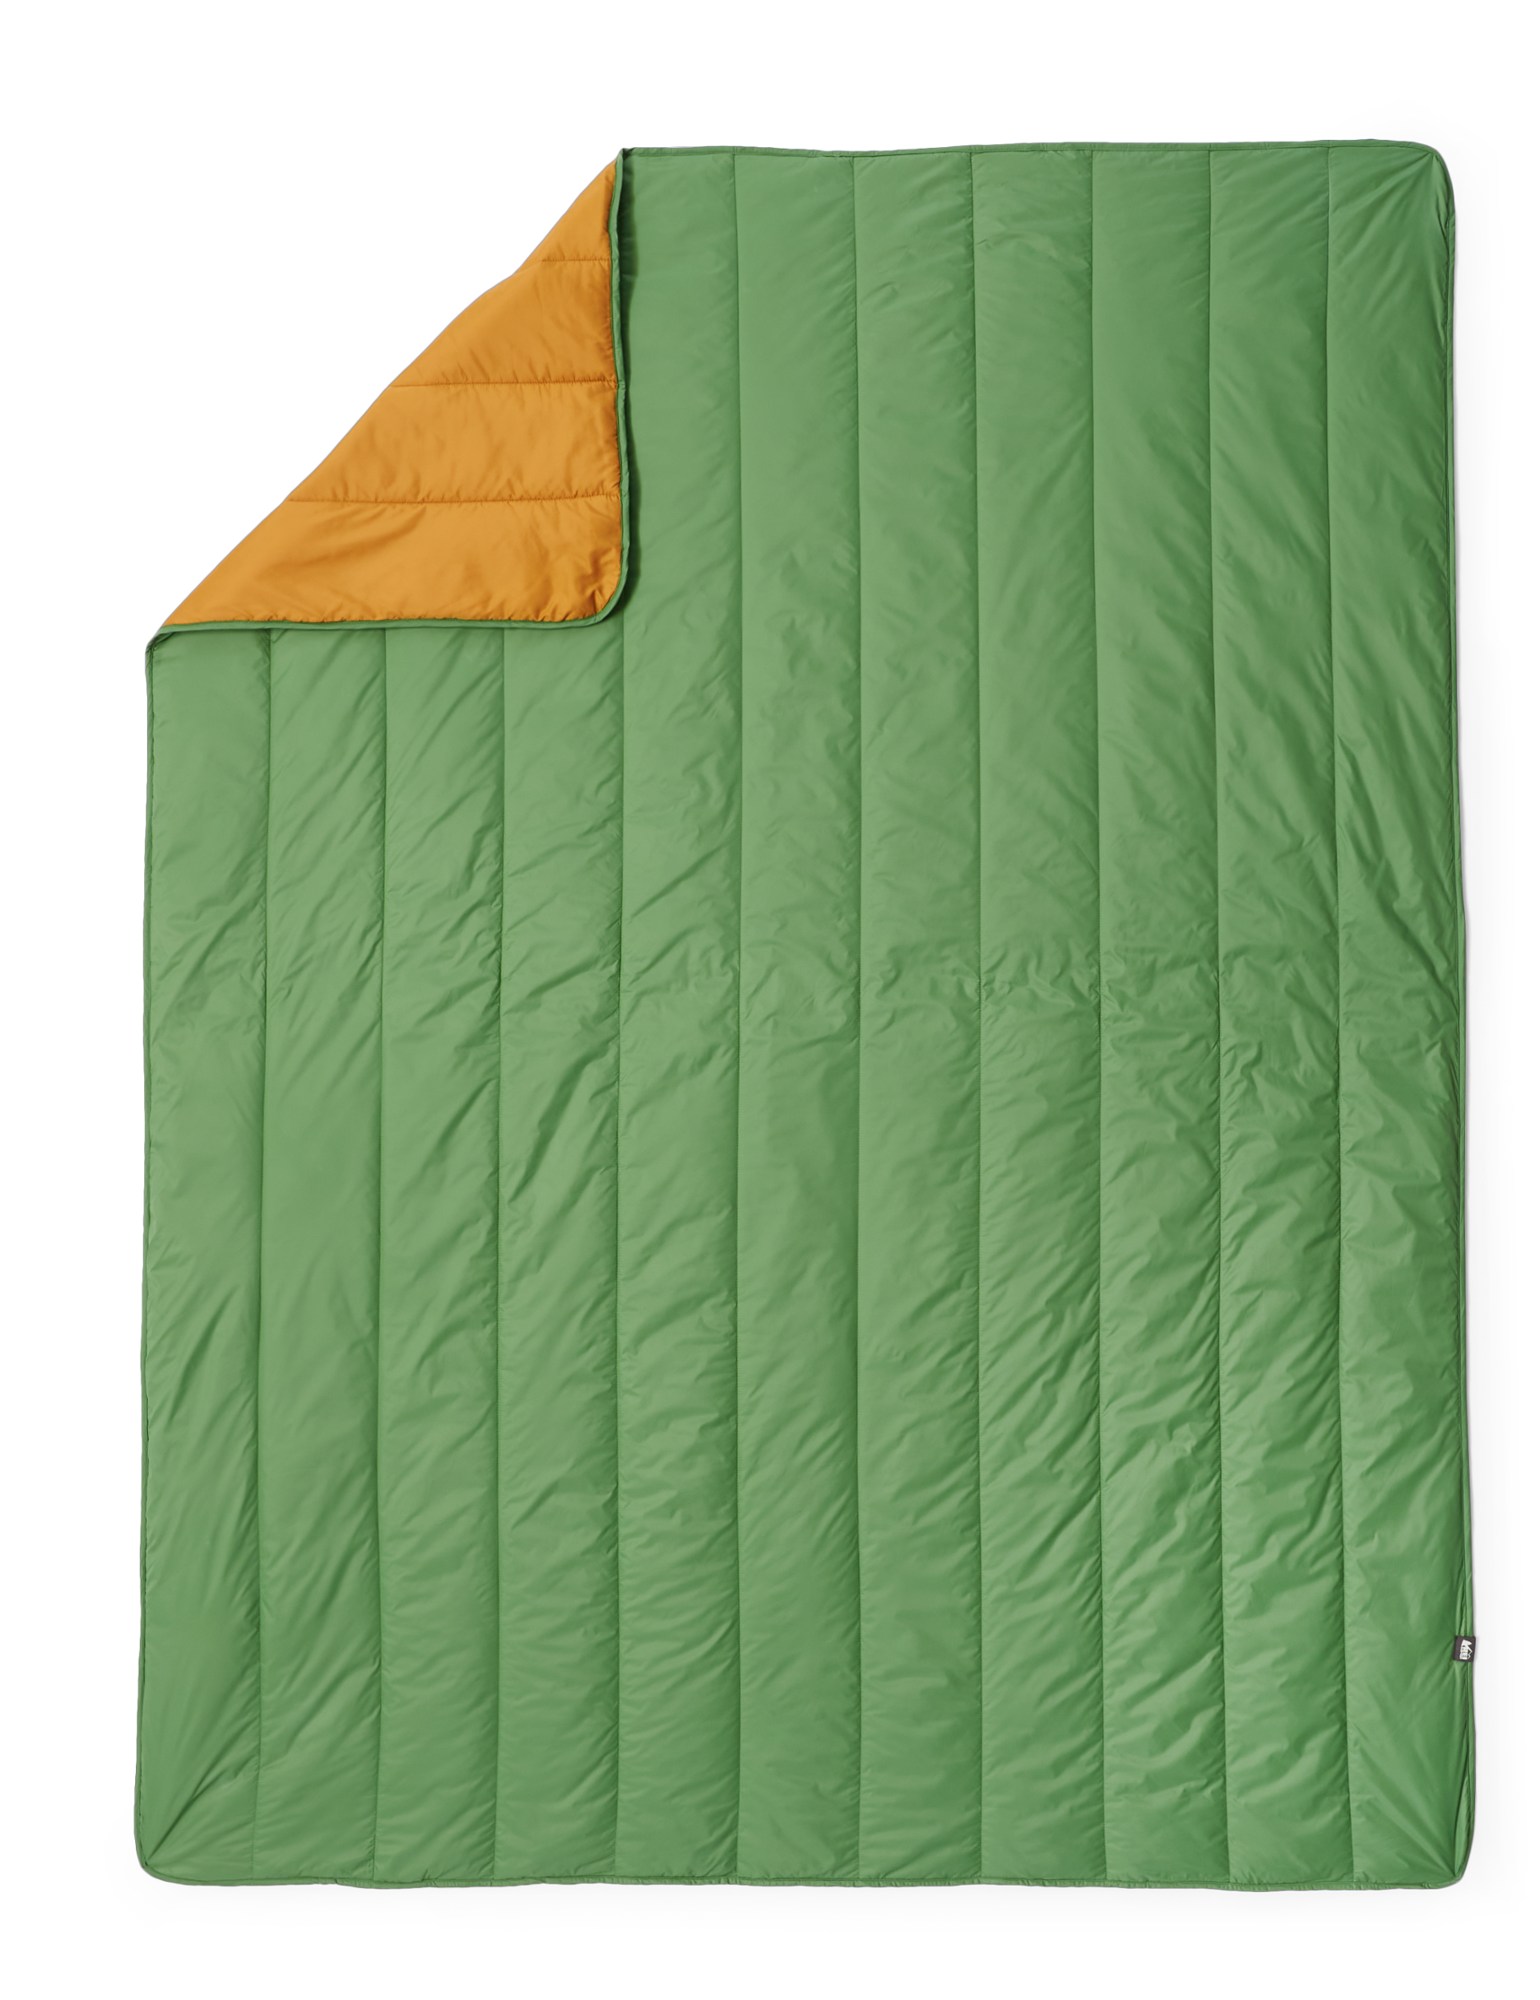 прочное уютное одеяло с пуговицами биткоин наплечный рюкзак roll17 дюймов винтажный графический летний лагерь в винтажном стиле Лагерное одеяло REI Co-op, зеленый